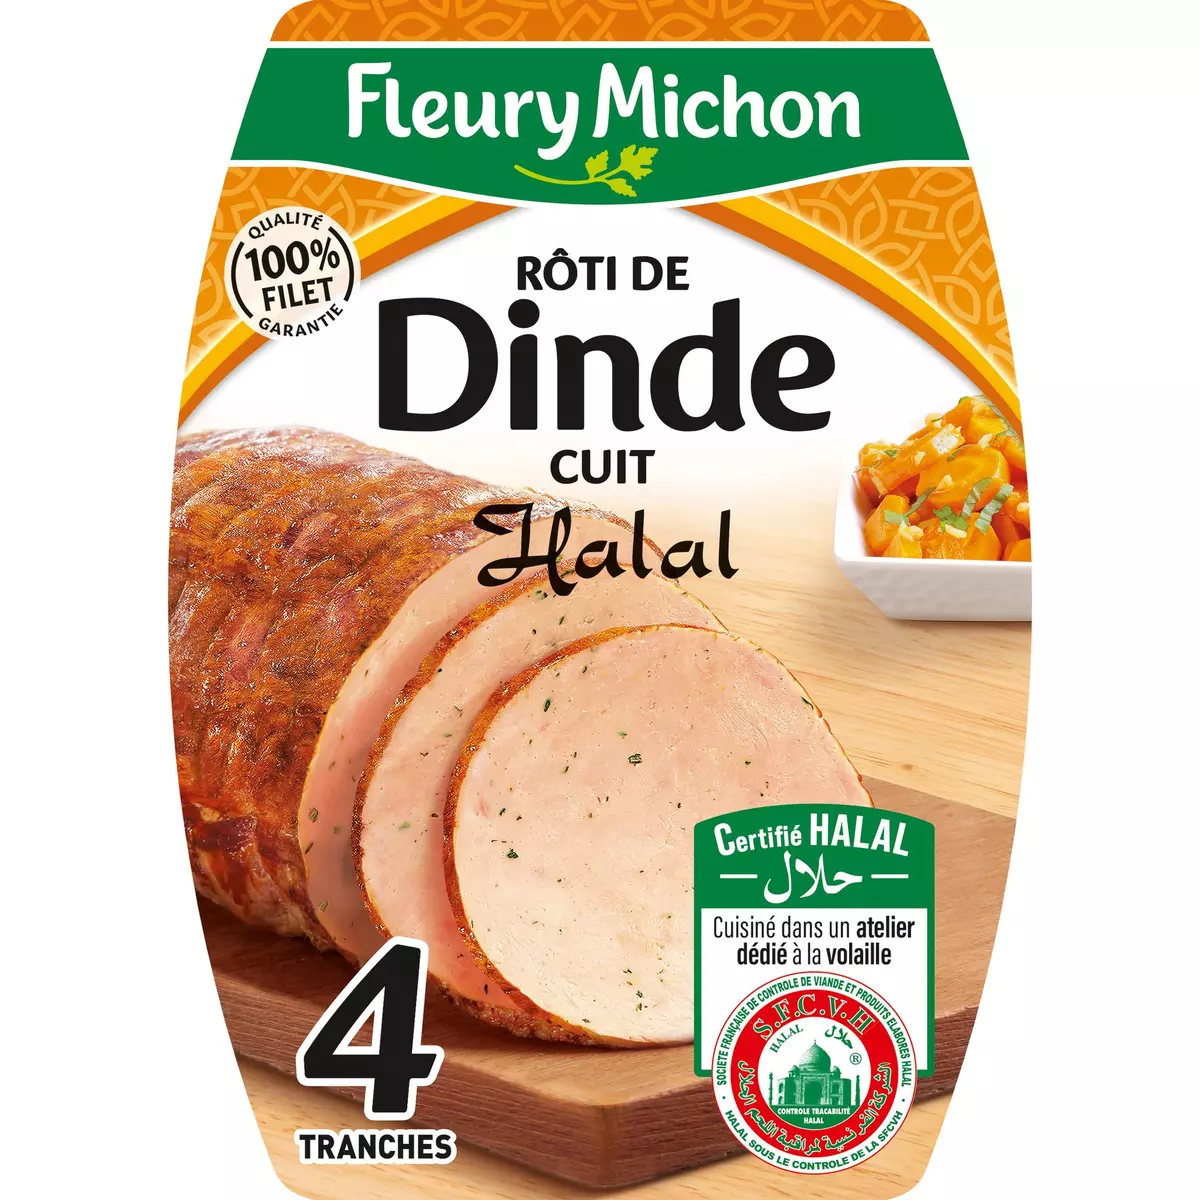 FLEURY MICHON Rôti de dinde halal 4 tranches 120g